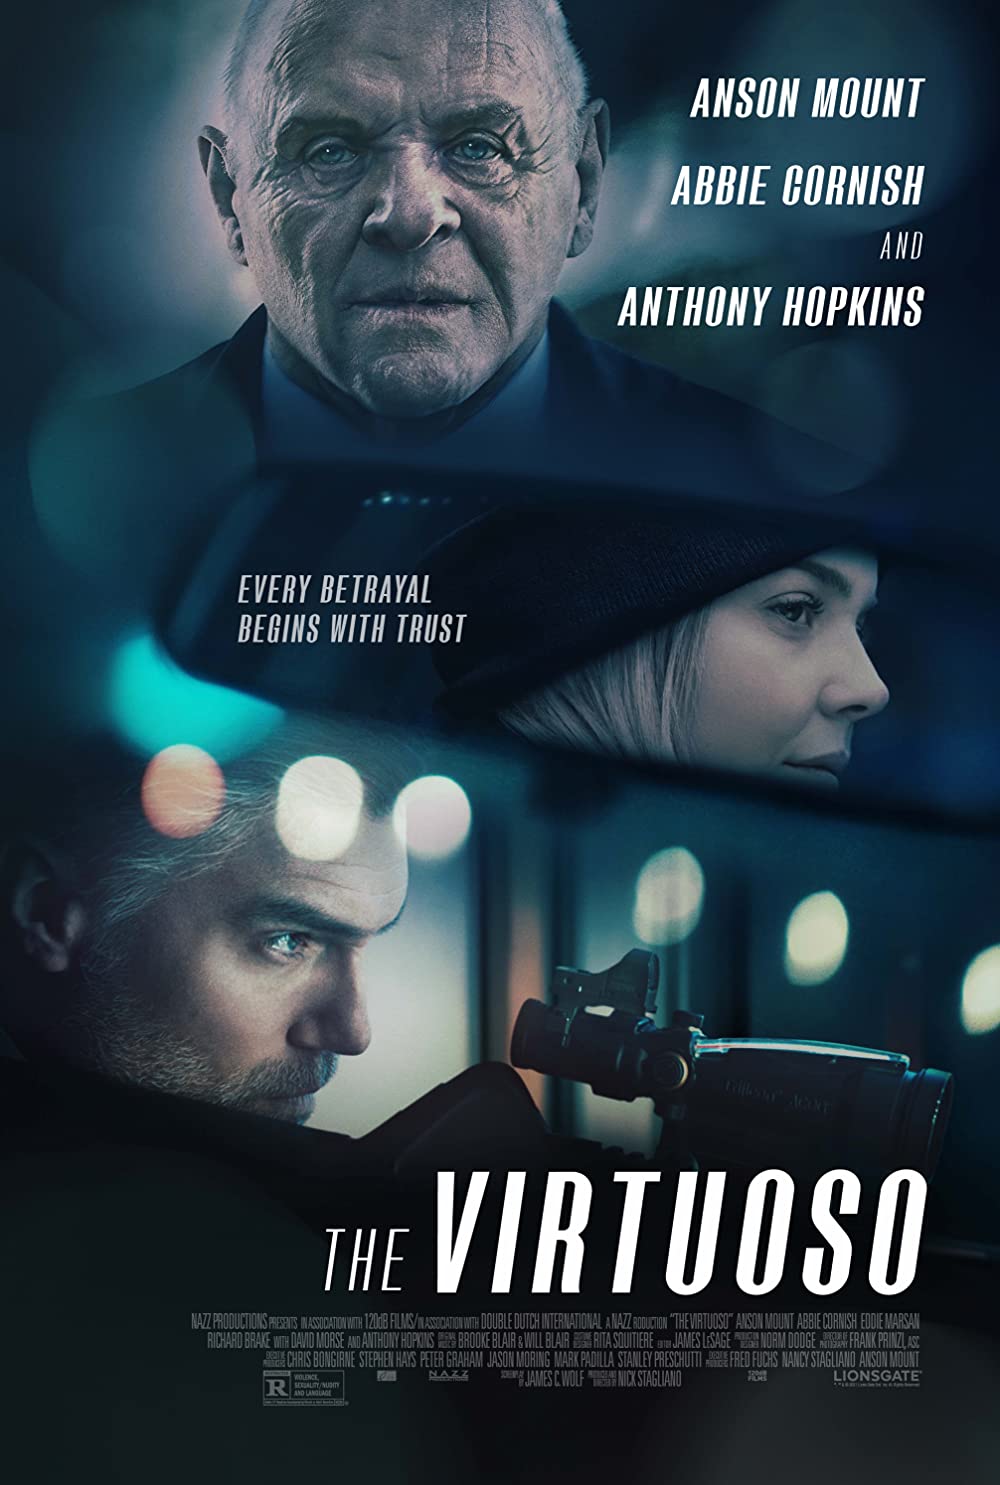 Filmbeschreibung zu The Virtuoso (OV)